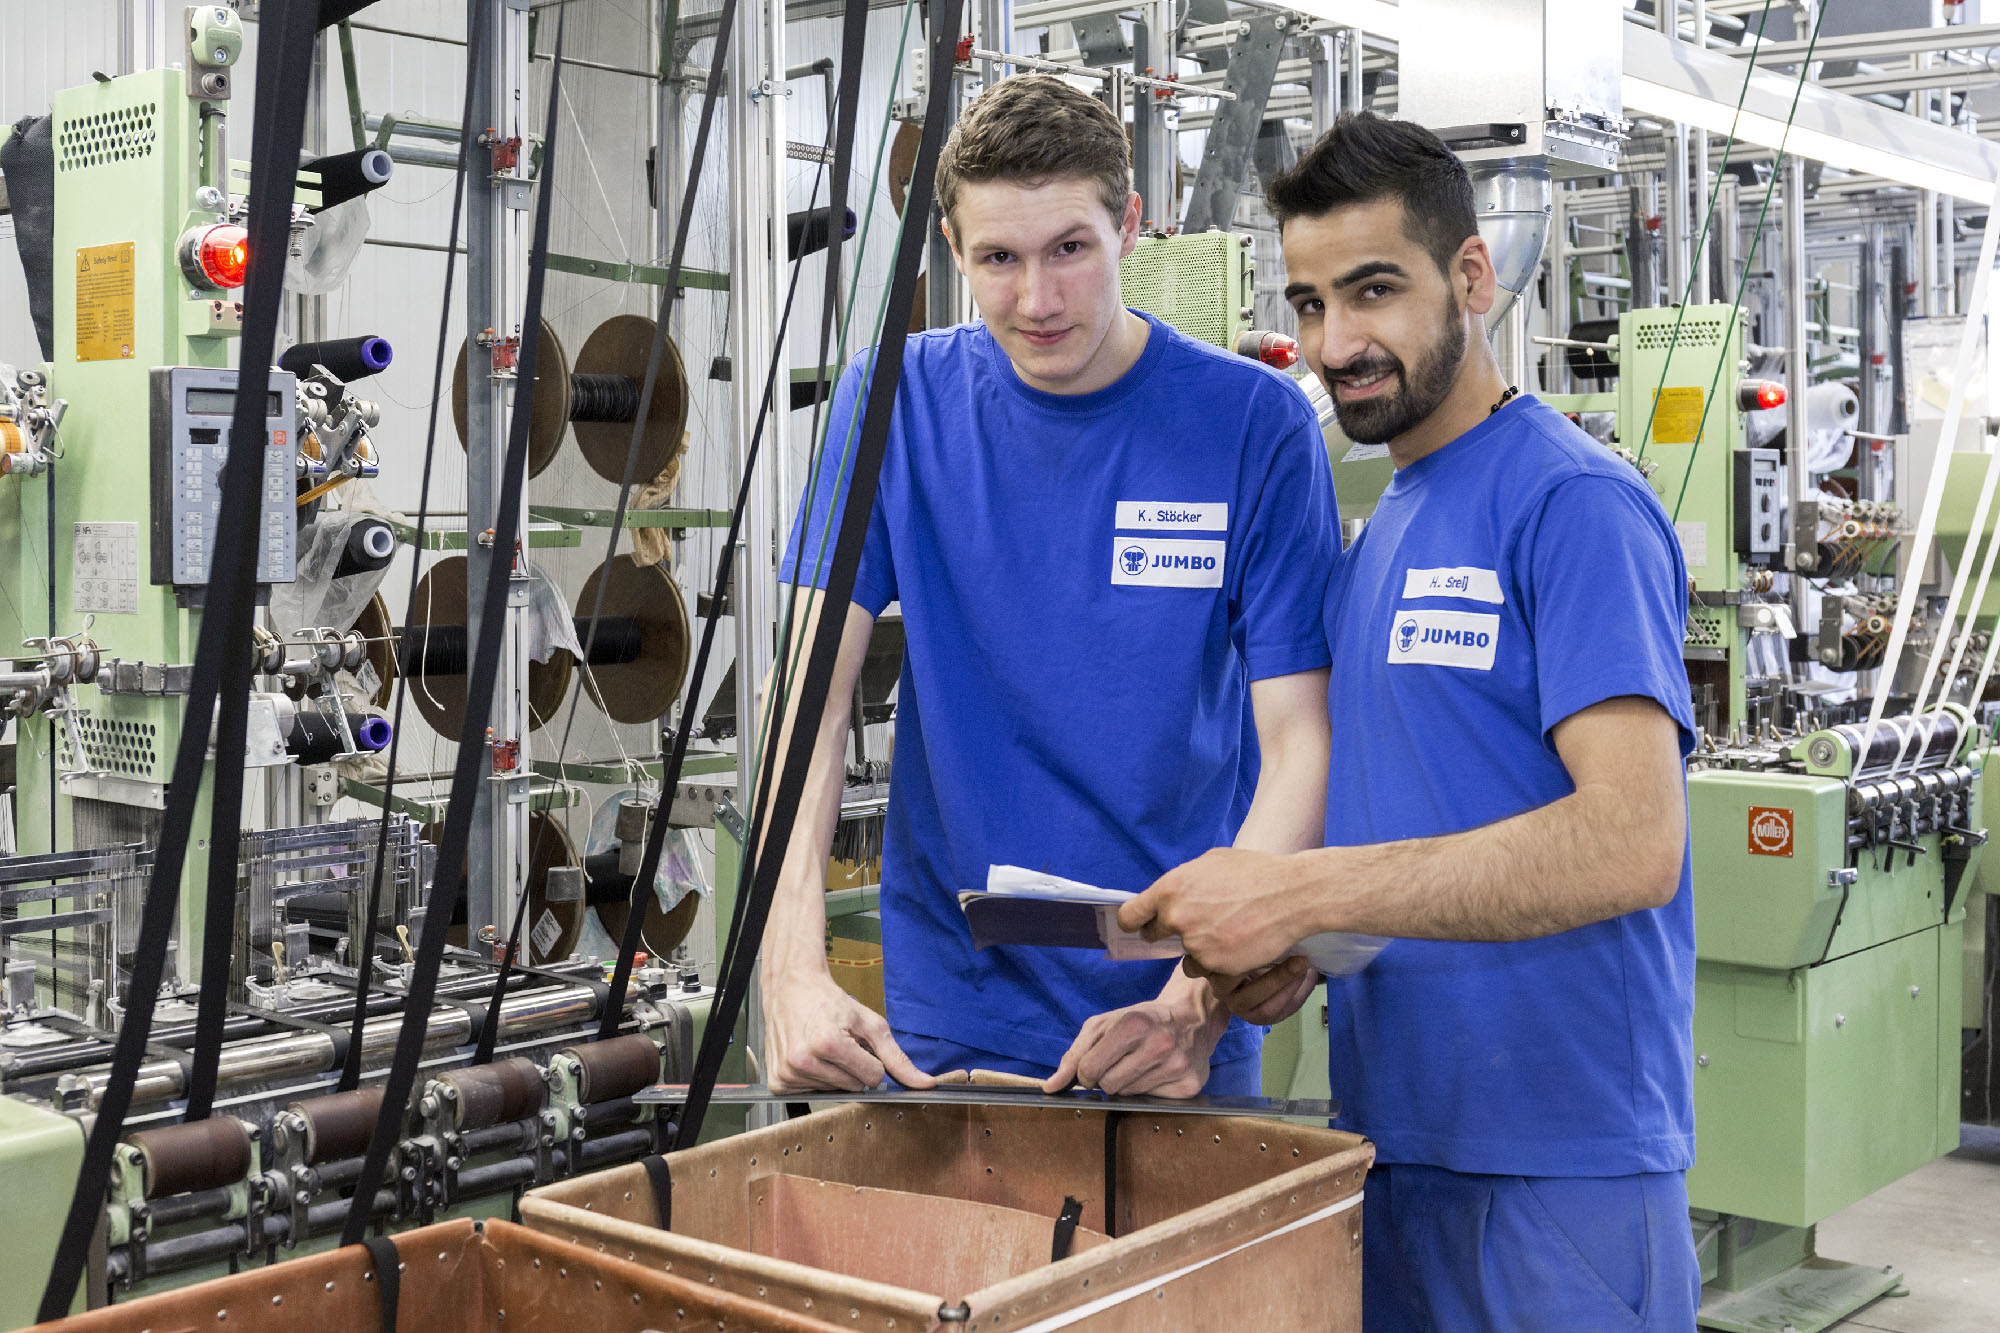 Zwei JUMBO-Textil-Mitarbeiter in der Produktionshalle, sie schauen in die Kamera und tragen blaue Arbeitskleidung